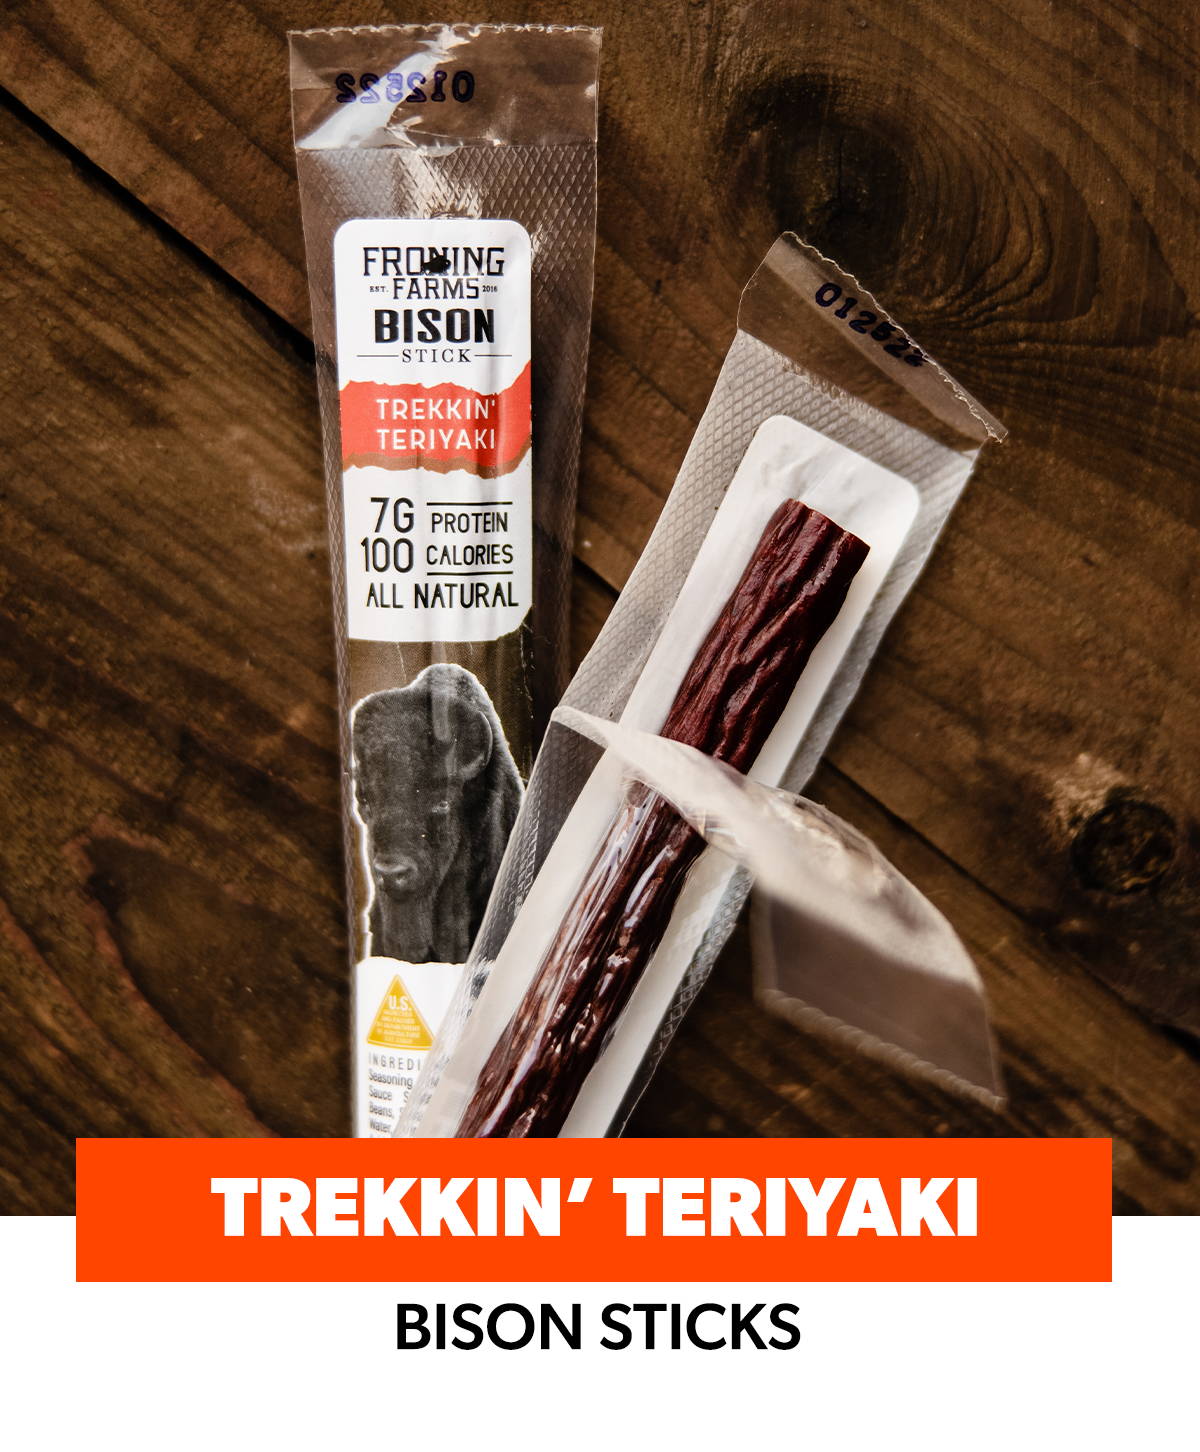 Froning Farms Bison Sticks Trekkin' Teriyaki Flavor